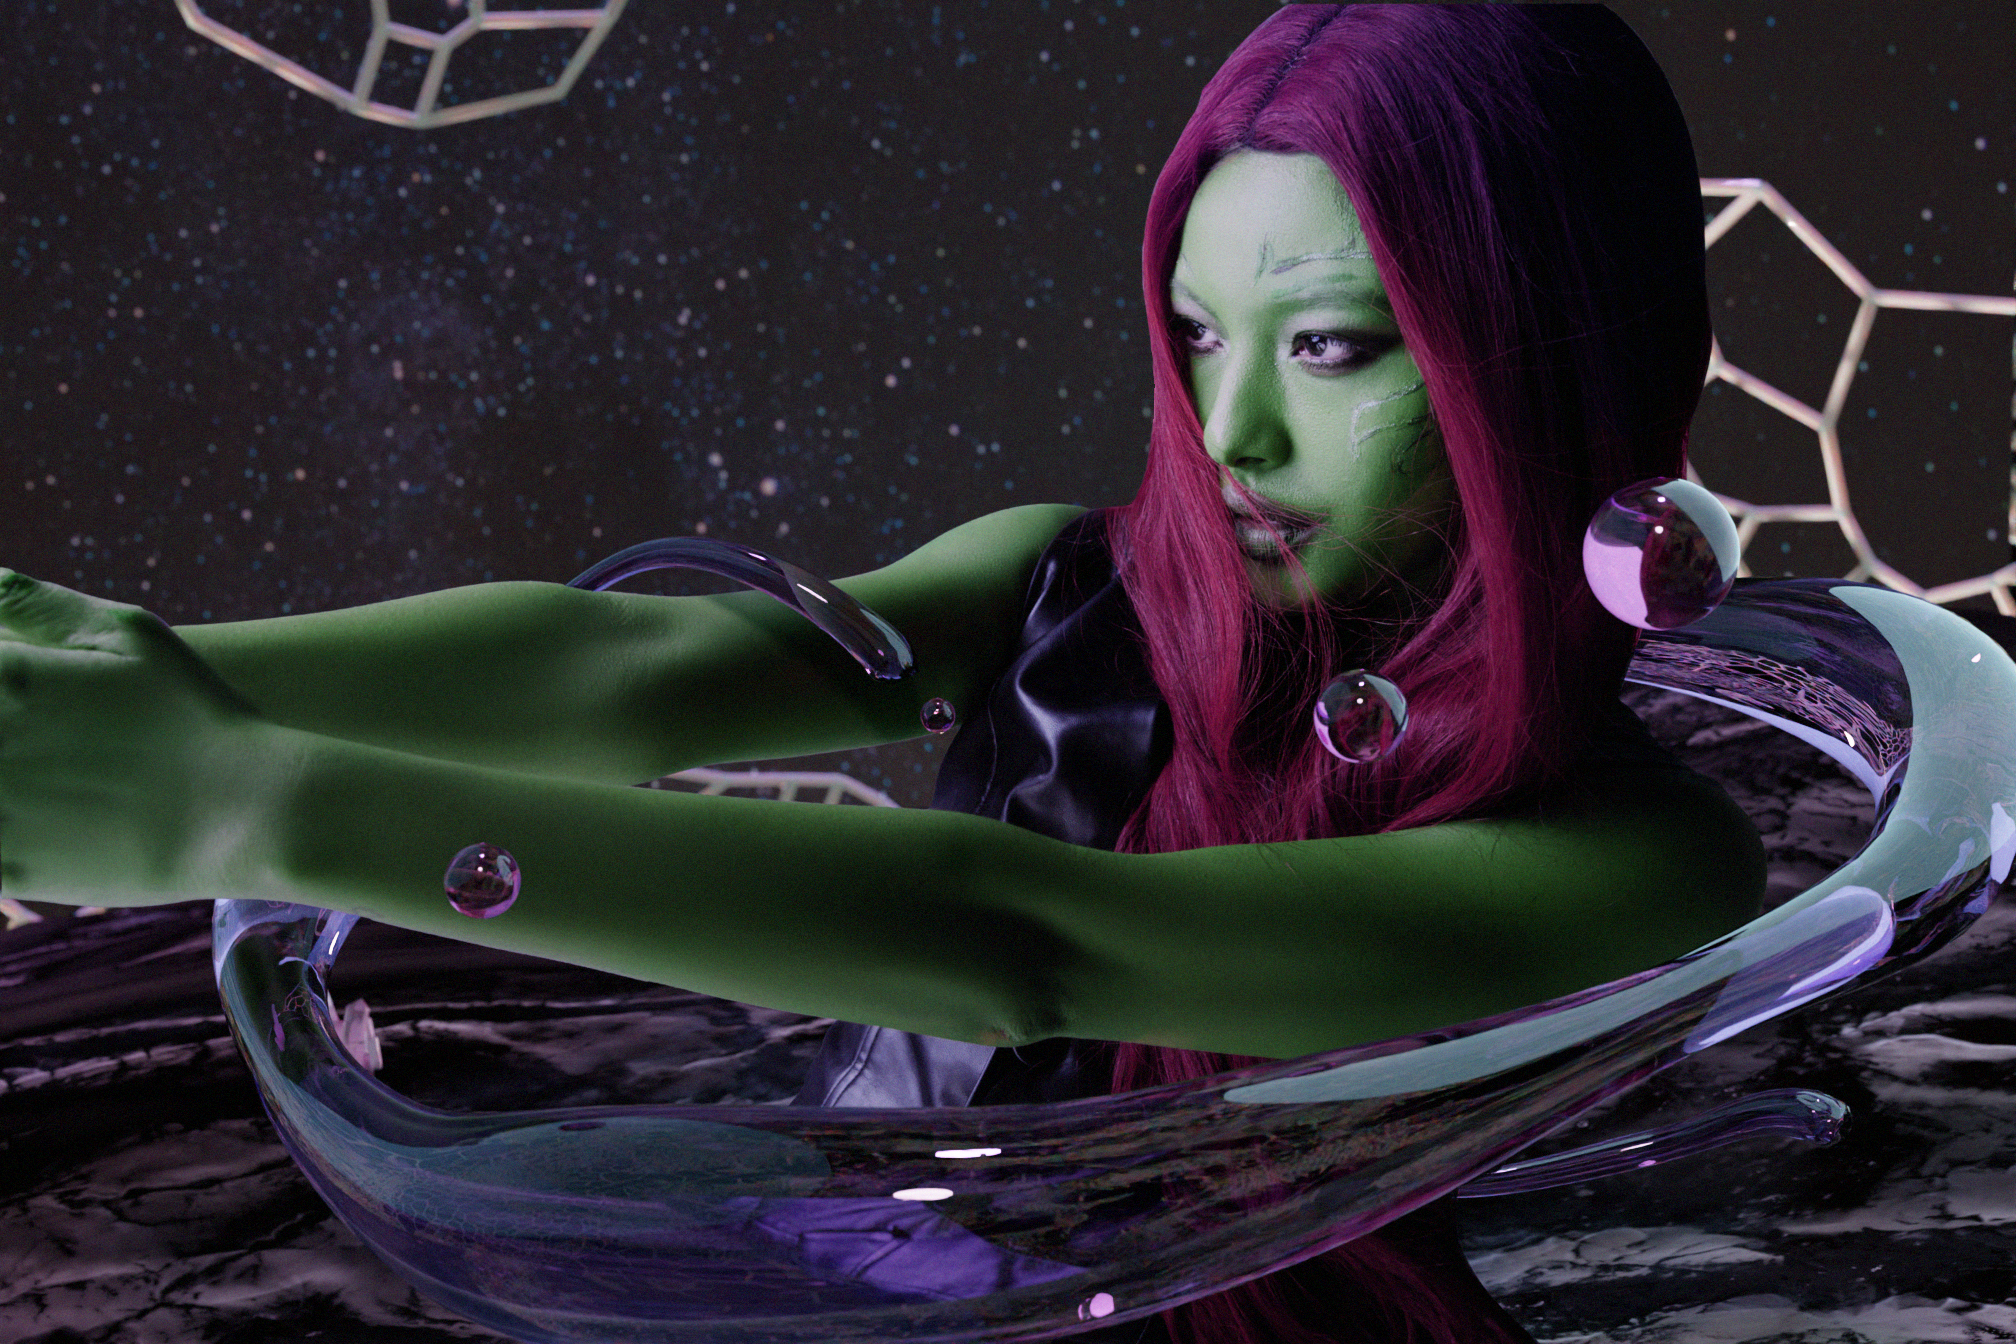 Nhân vật đầu tiên mà Tú Hảo chọn hóa thân đó chính là Gamora - nhân vật được yêu thích trong loạt siêu anh hùng của Marvel Studio.